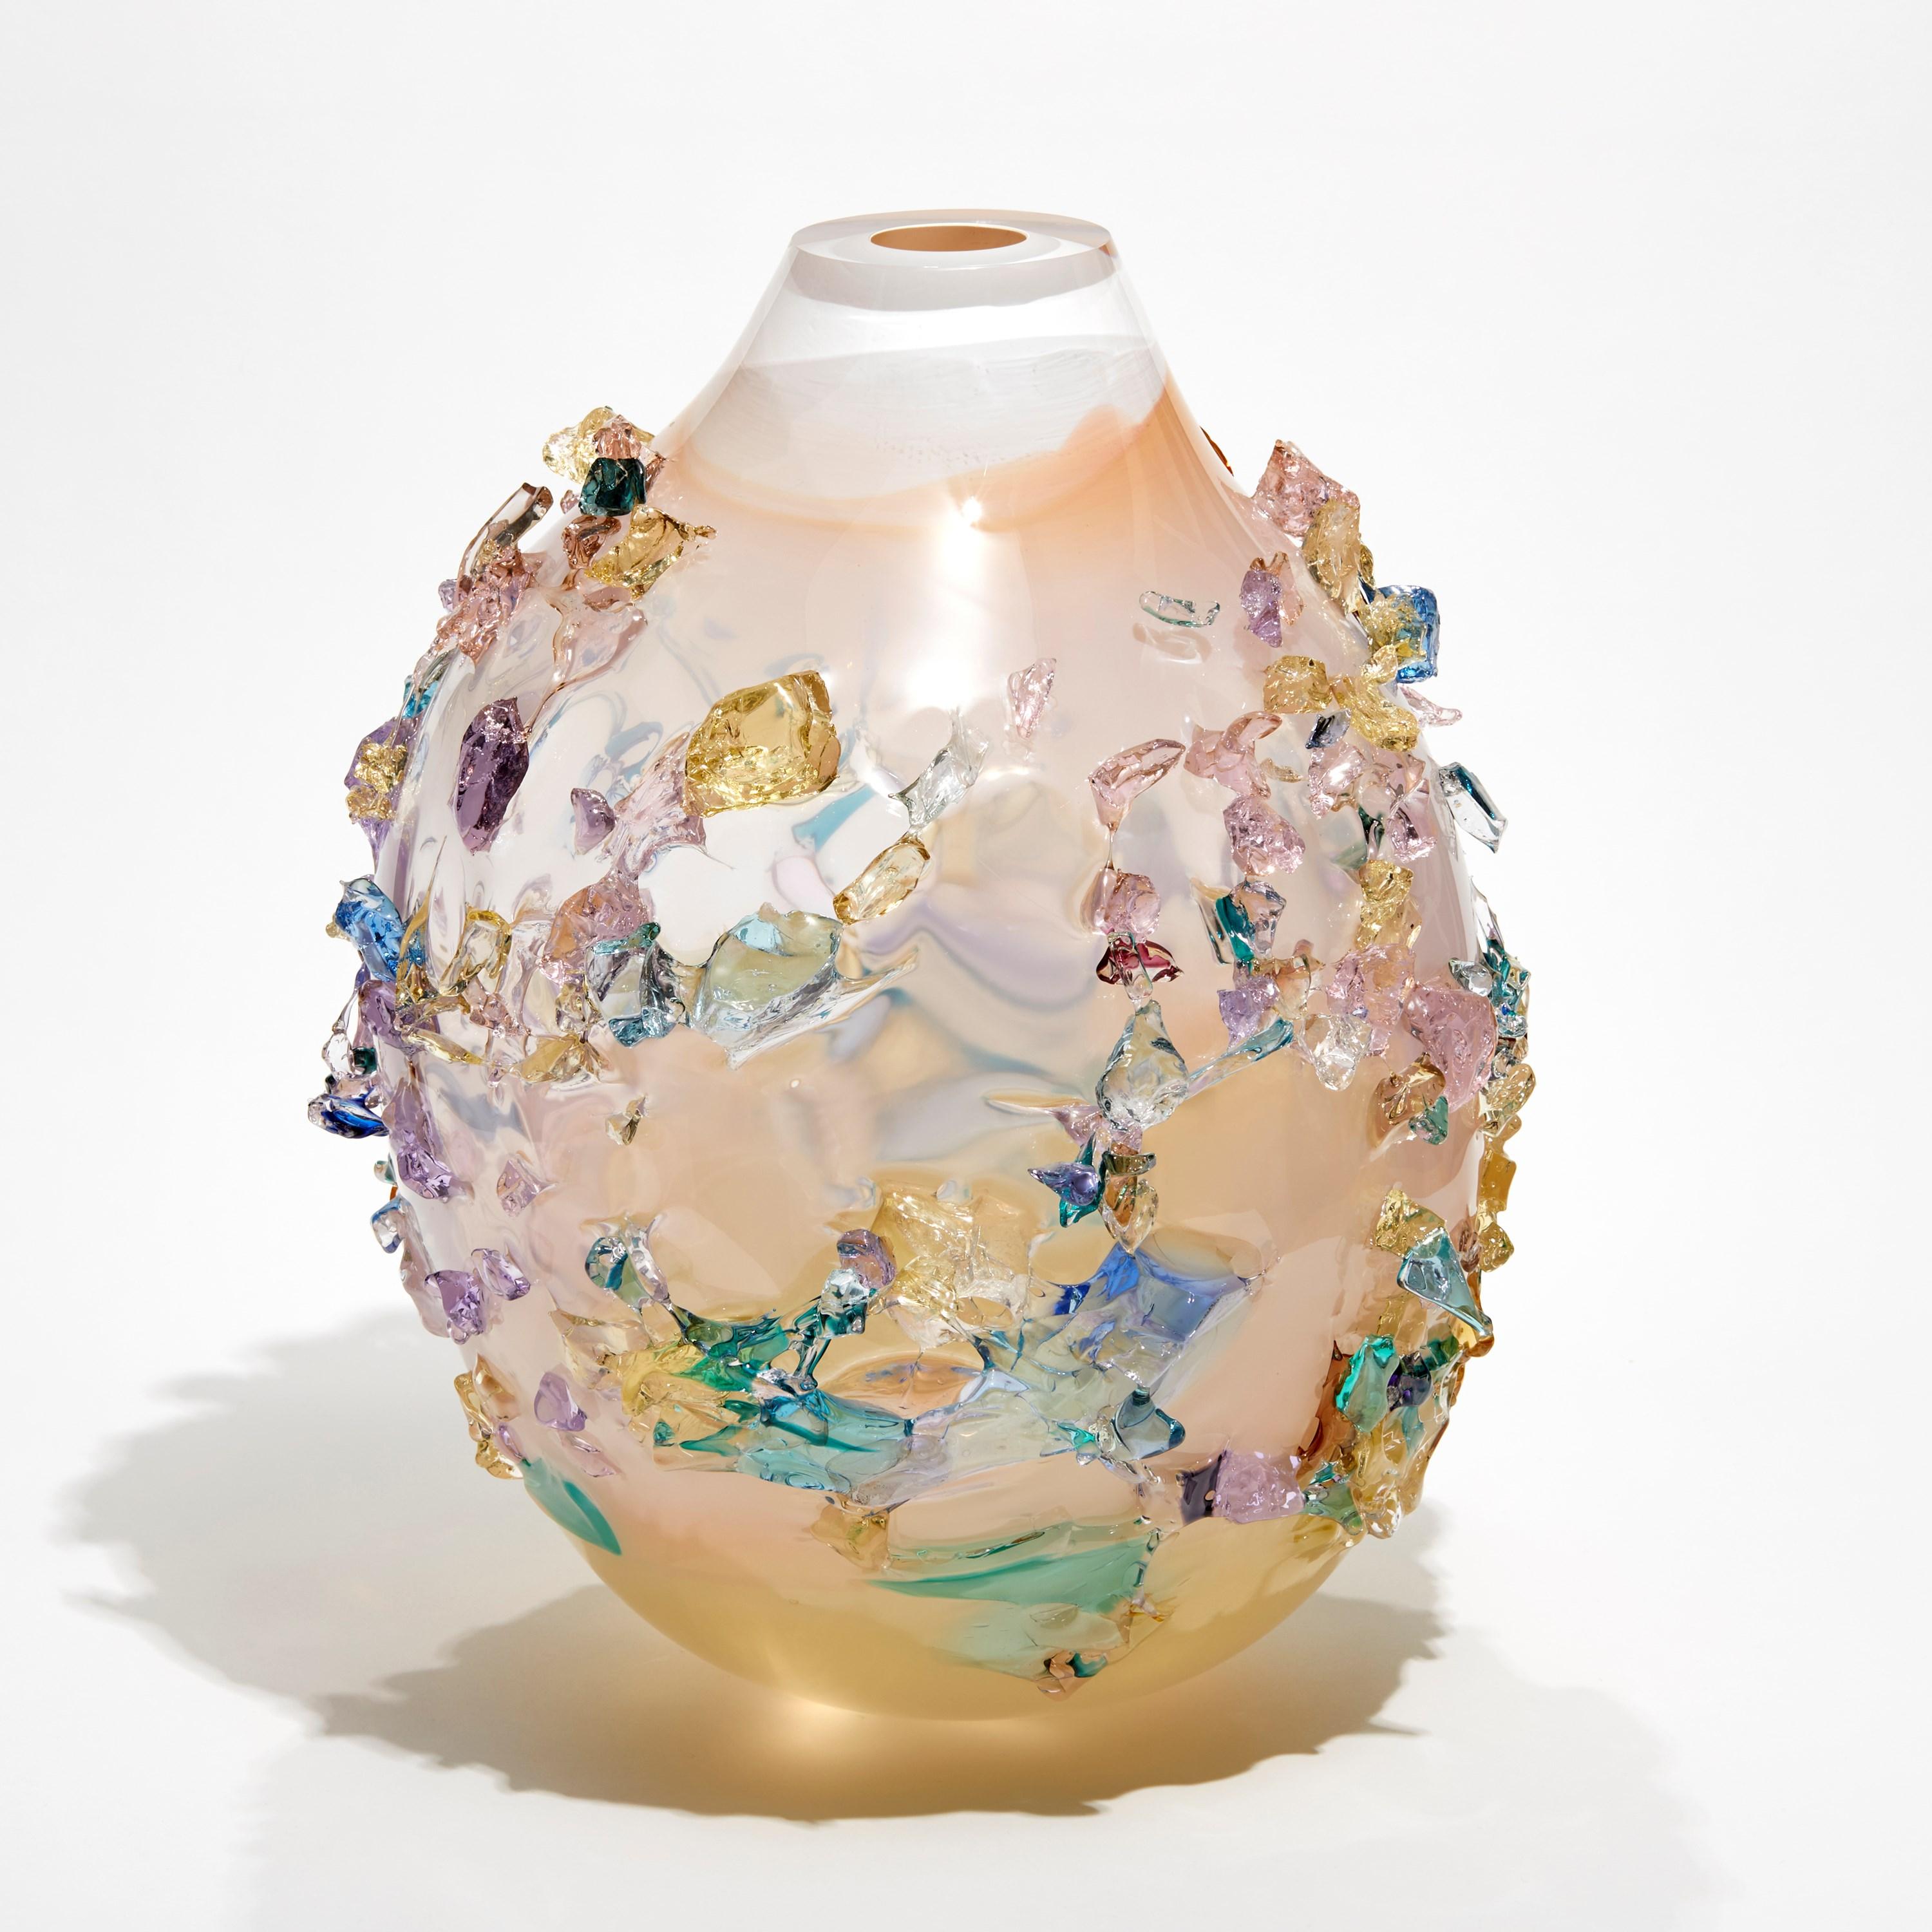 Dutch Sakura TRP21015, a Glass Vase in Corals with Mixed Colors by Maarten Vrolijk For Sale